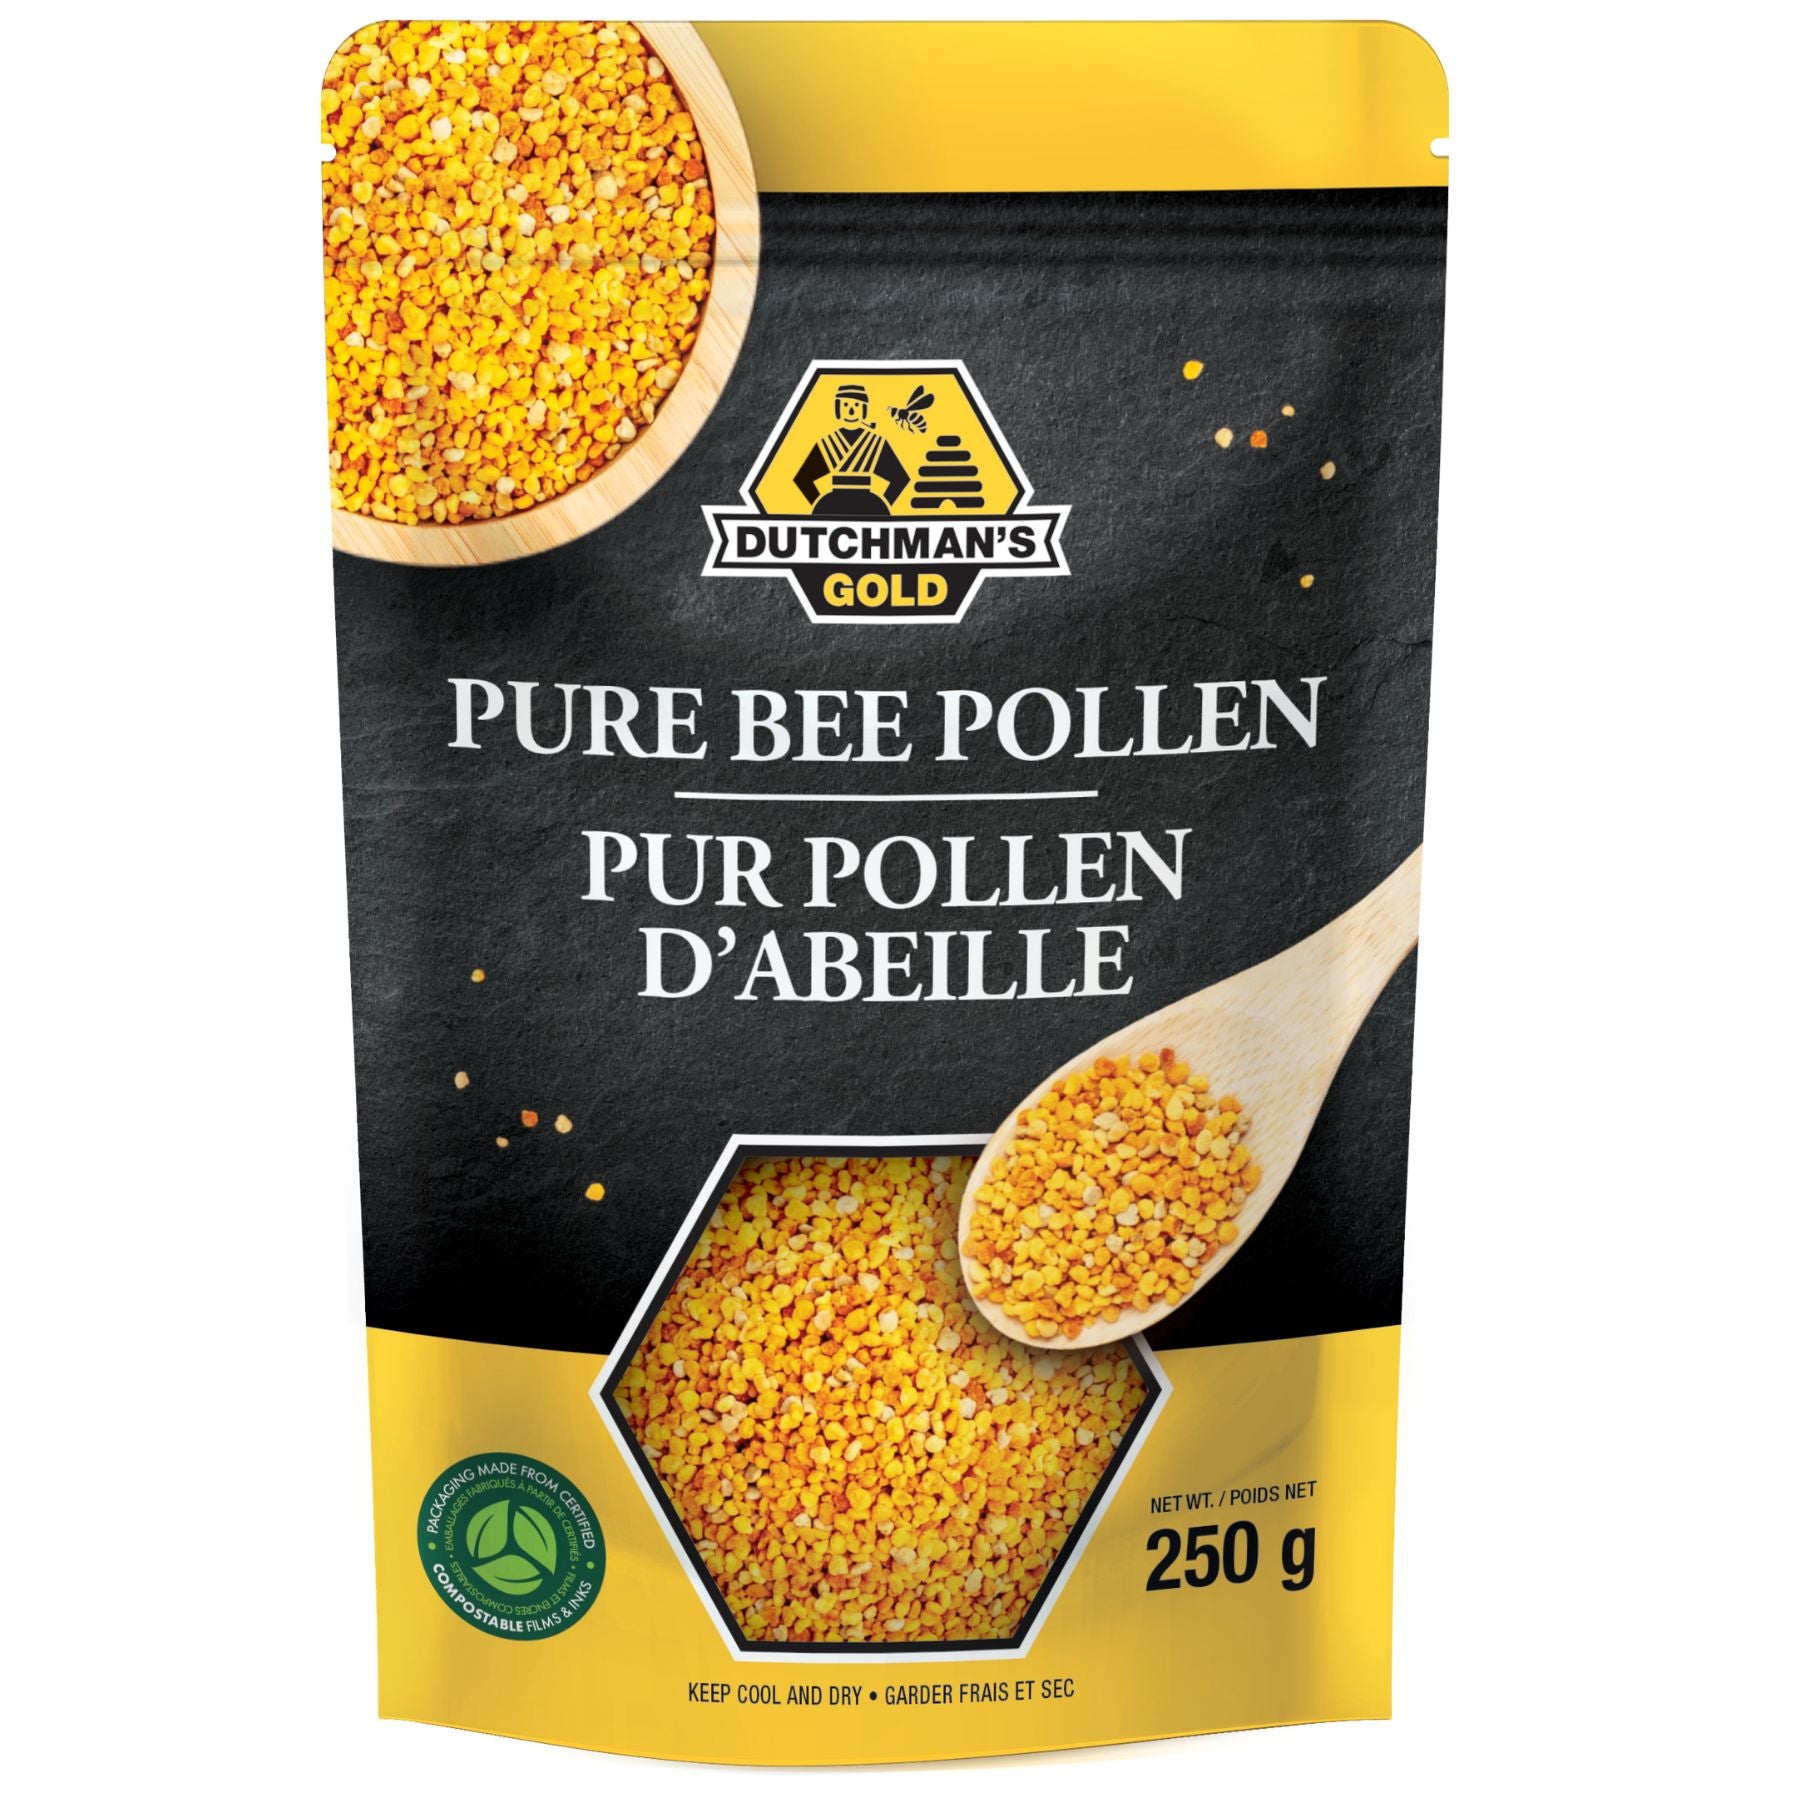 Dutchman's Gold Pure Bee Pollen 250g